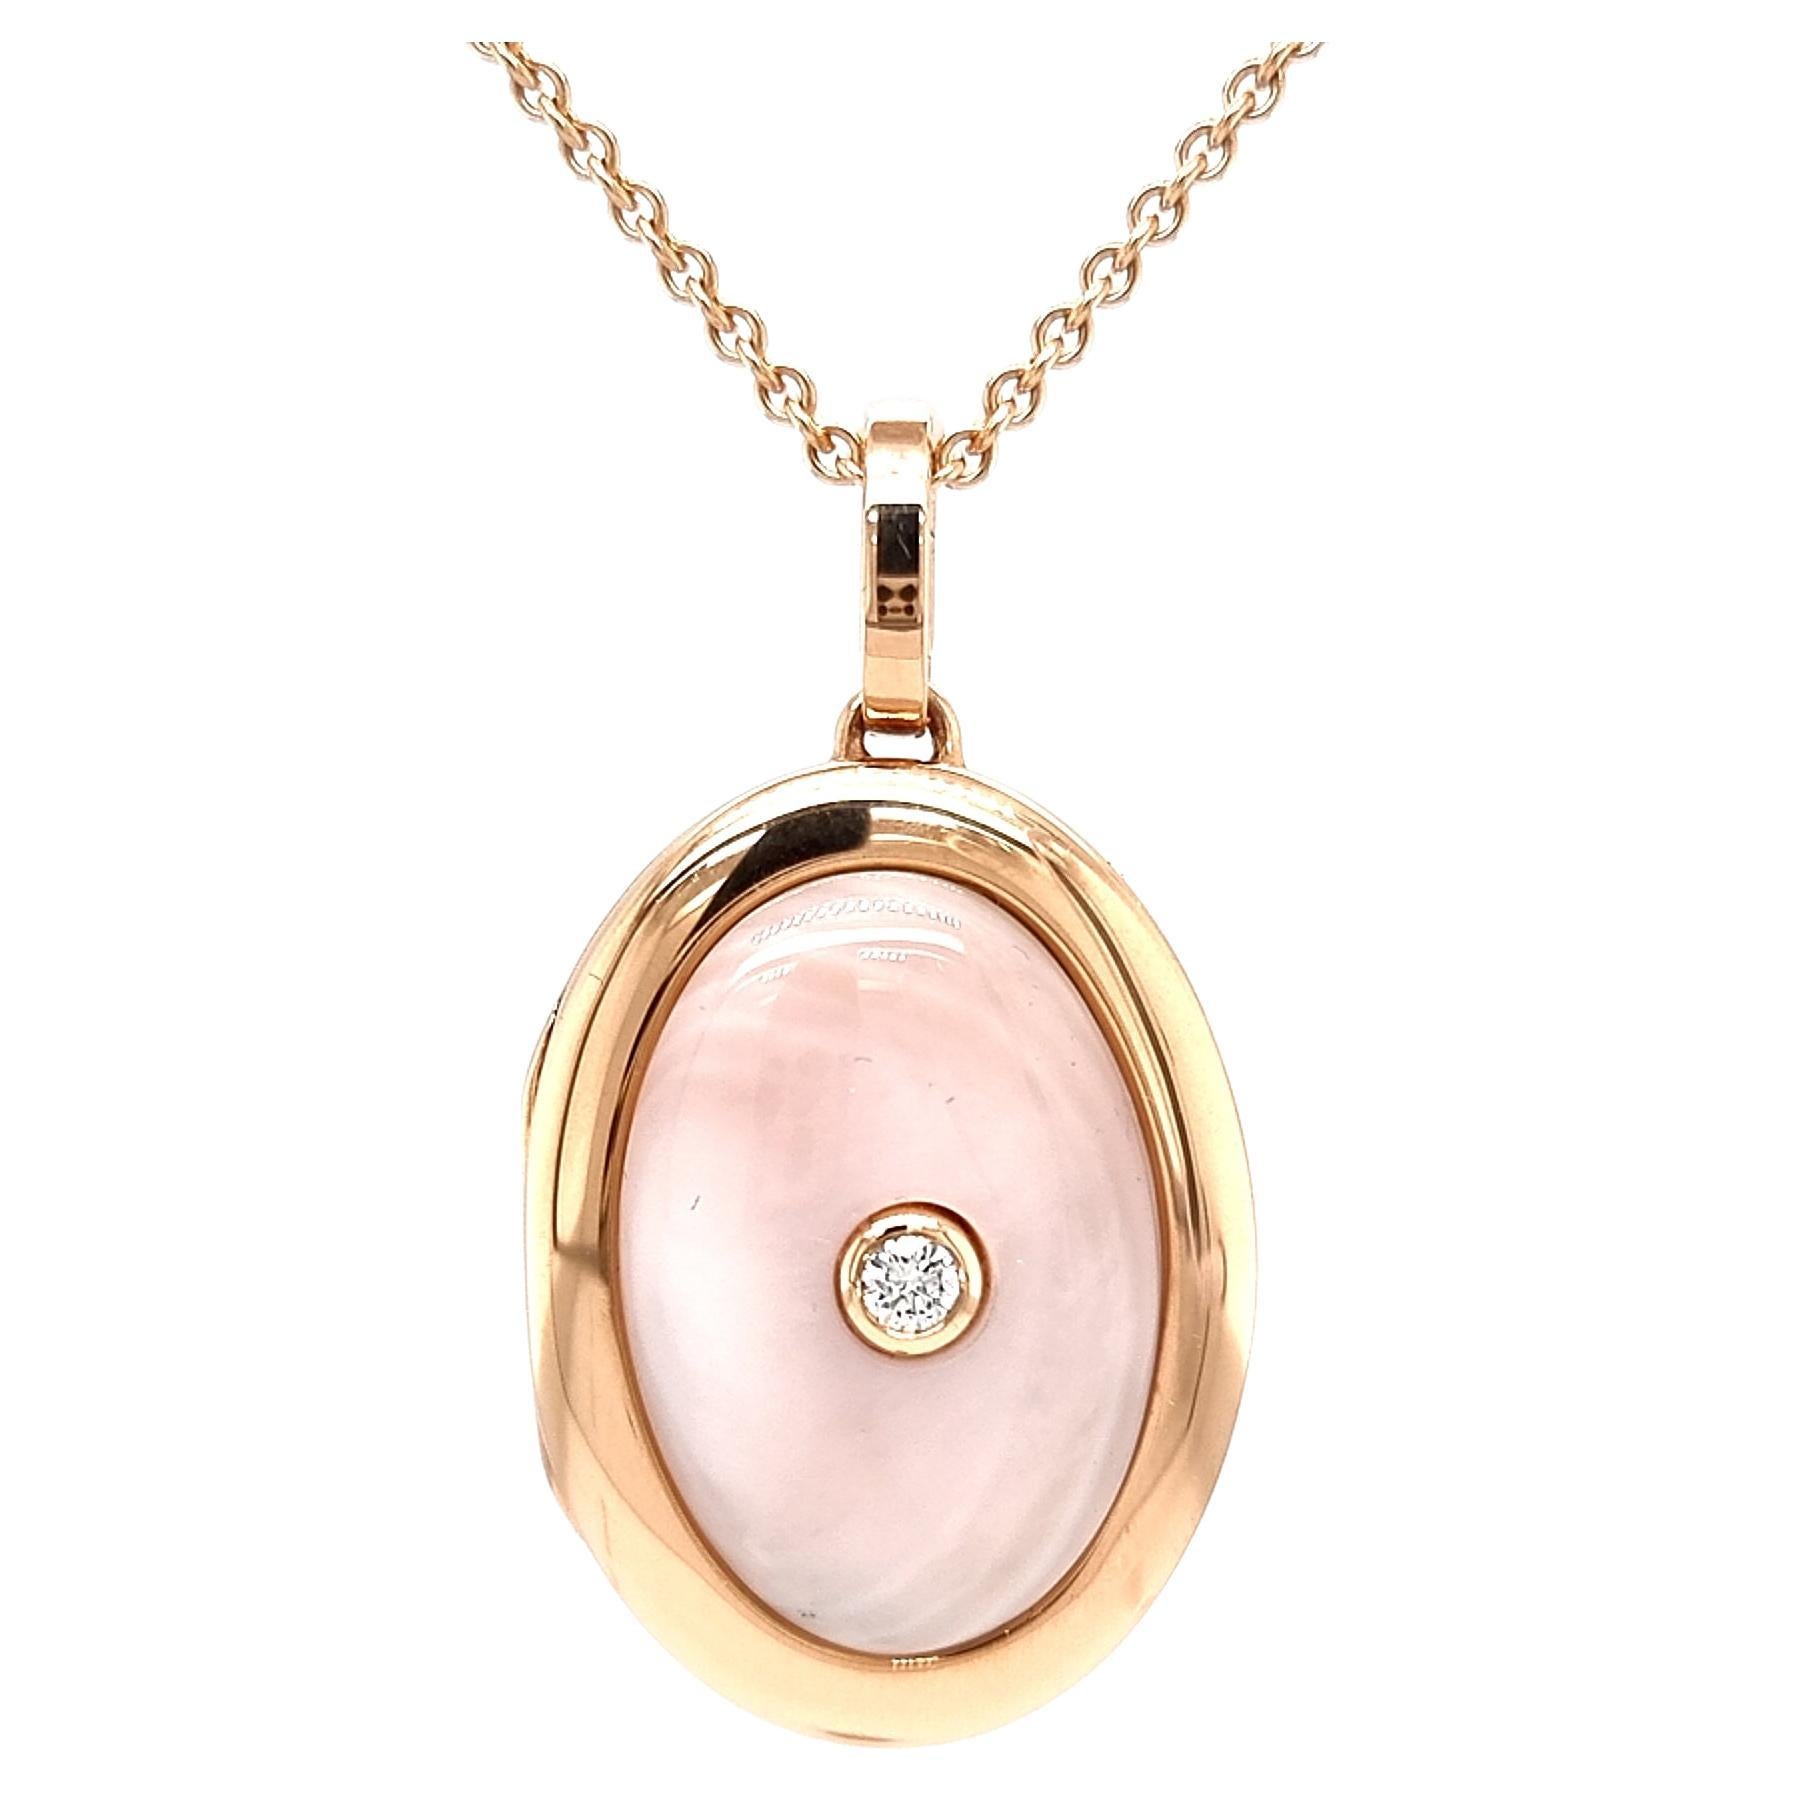 Collier pendentif médaillon ovale en or rose 18 carats - 1 diamant 0,10 ct H VS perle rose